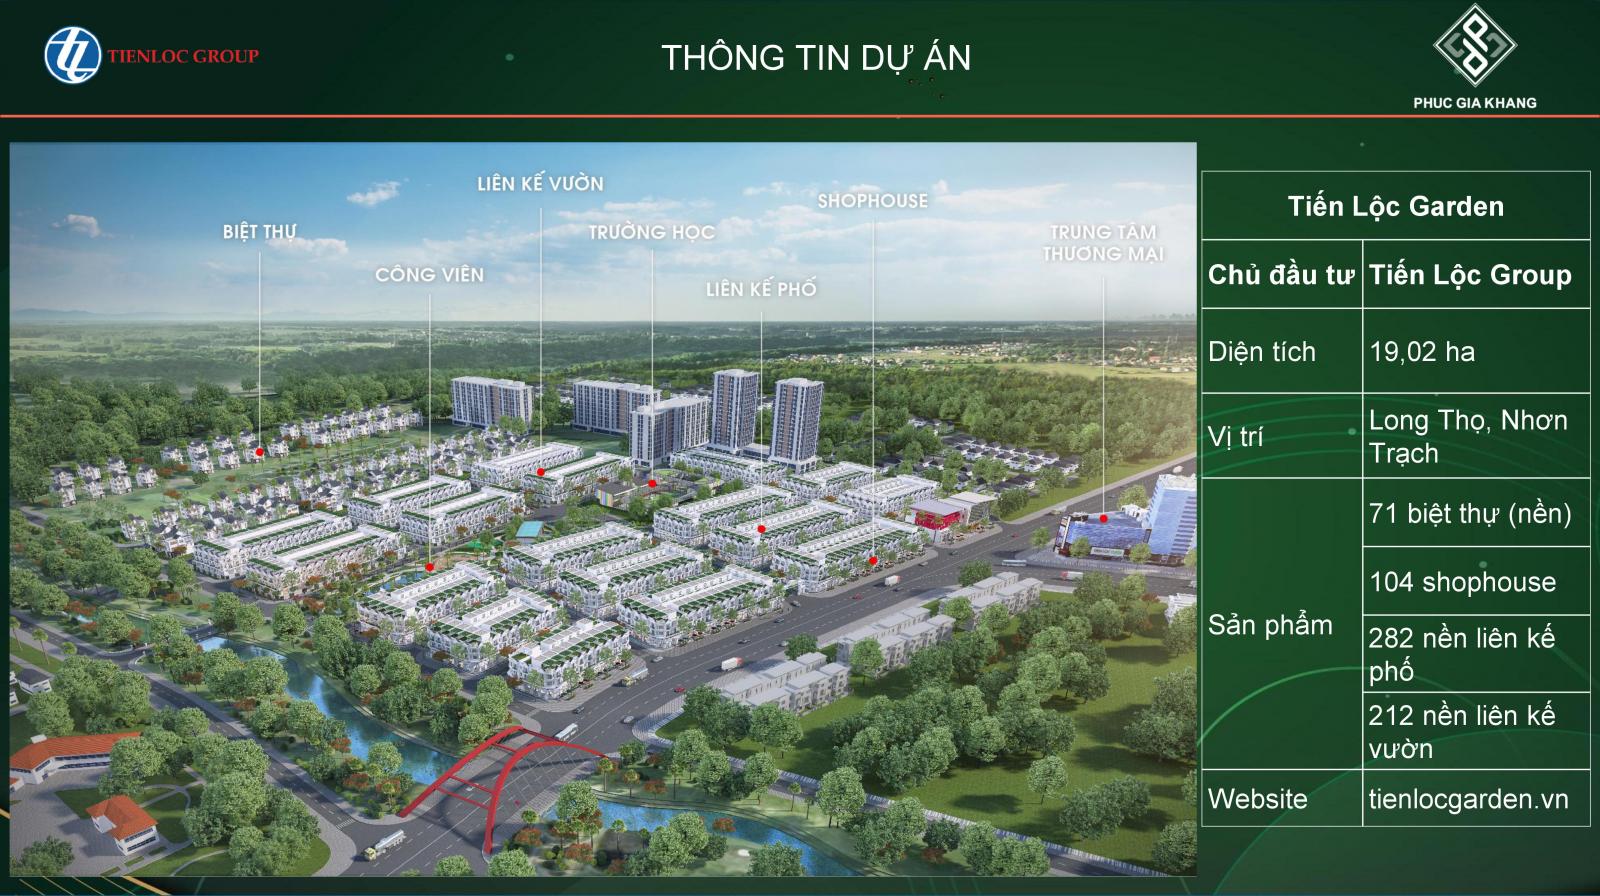 Đất nền Nhơn Trạch, dự án Tiến Lộc Garden cơ hội tốt để đầu tư, LH: 0706.017.007